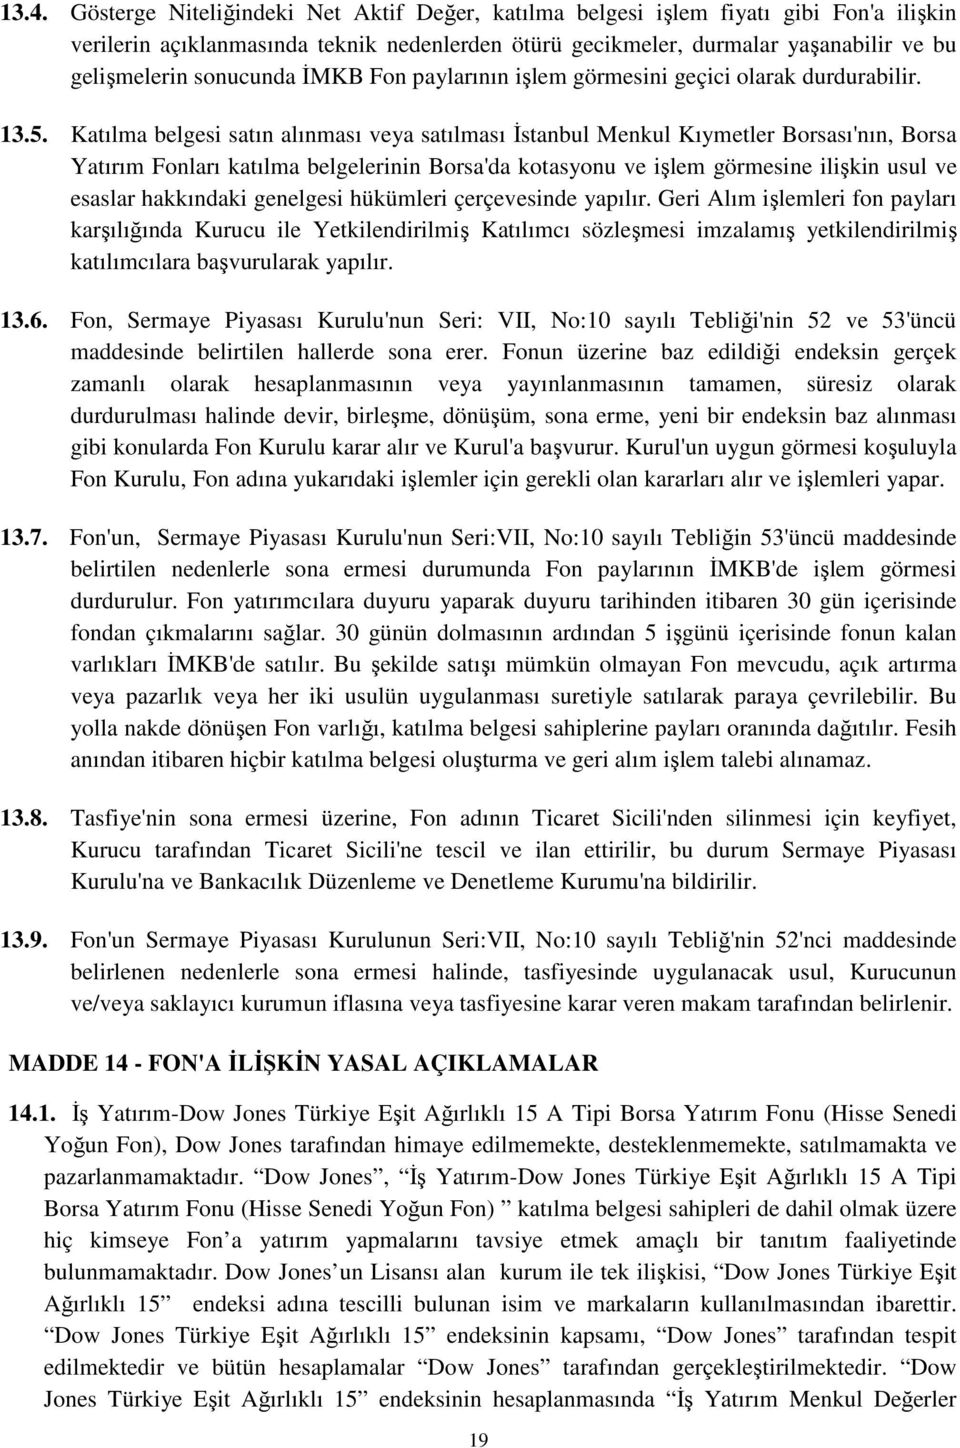 Katılma belgesi satın alınması veya satılması İstanbul Menkul Kıymetler Borsası'nın, Borsa Yatırım Fonları katılma belgelerinin Borsa'da kotasyonu ve işlem görmesine ilişkin usul ve esaslar